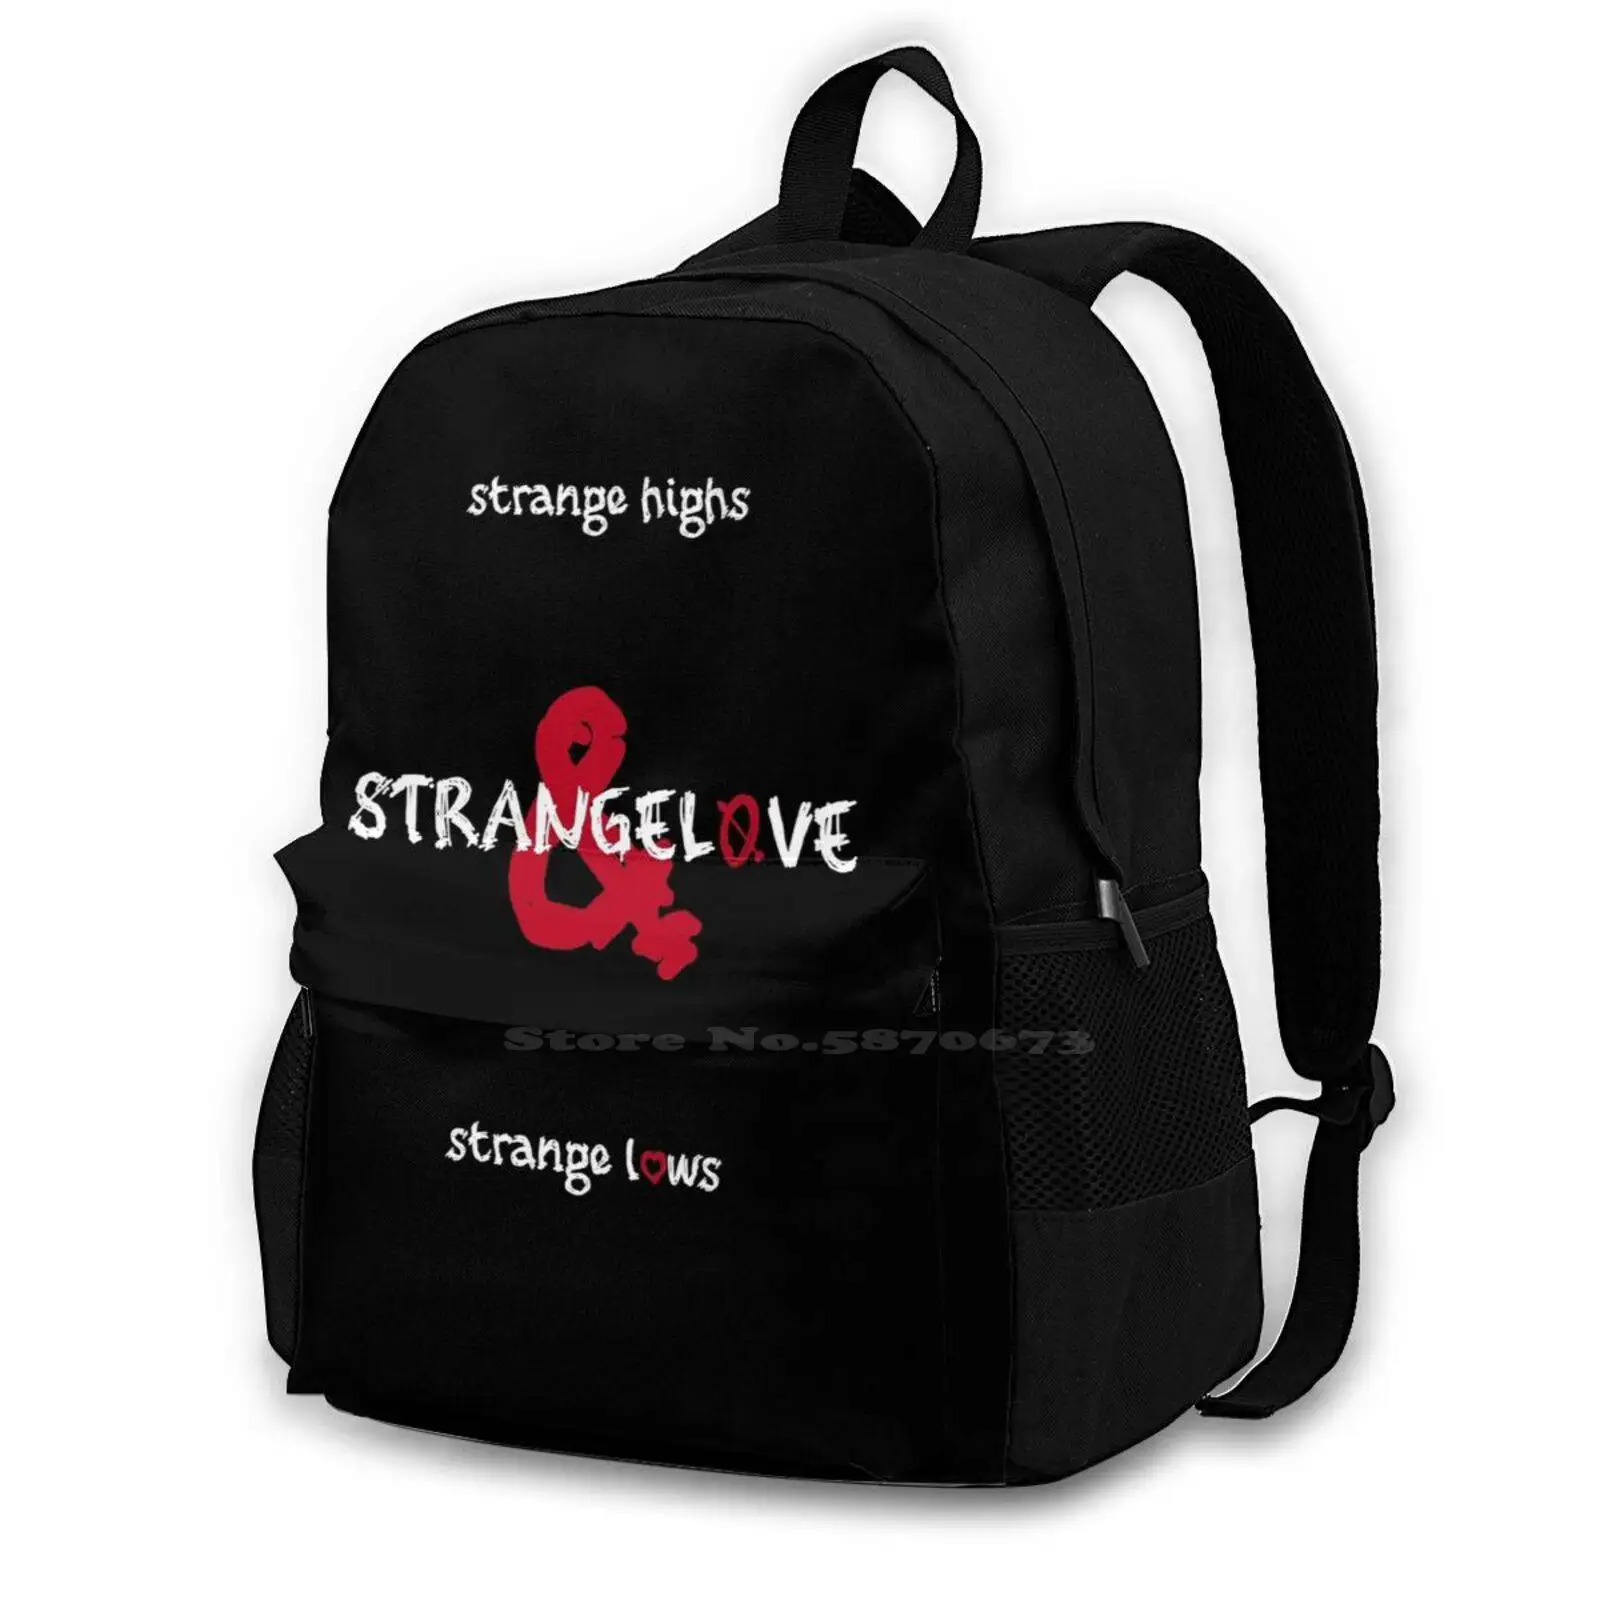 

Strangelove (For Dark Background) Backpack For Student School Laptop Travel Bag Depeche Music For The Masses Strangelove